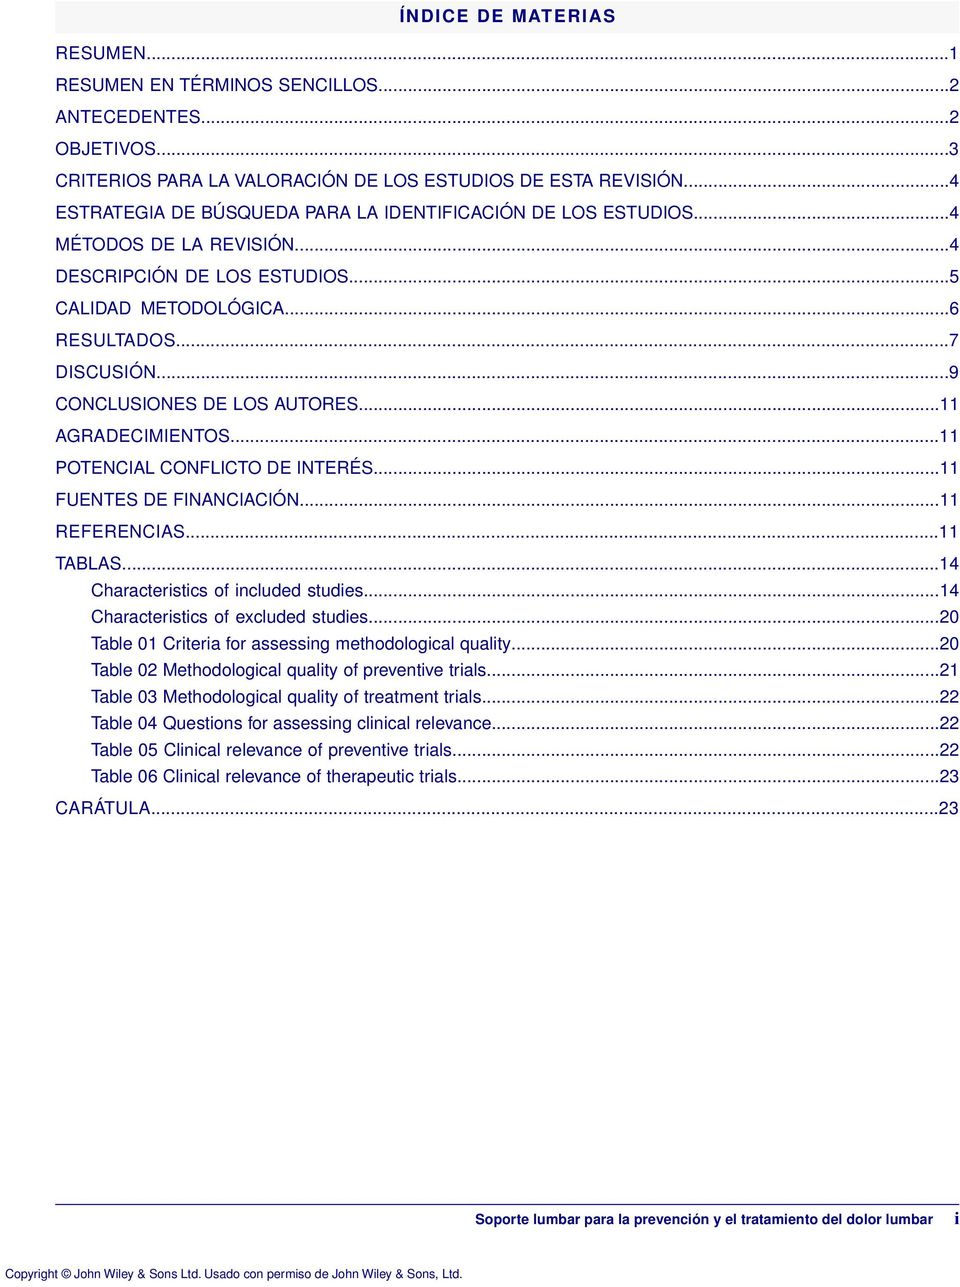 ..9 CONCLUSIONES DE LOS AUTORES...11 AGRADECIMIENTOS...11 POTENCIAL CONFLICTO DE INTERÉS...11 FUENTES DE FINANCIACIÓN...11 REFERENCIAS...11 TABLAS...14 Characteristics of included studies.